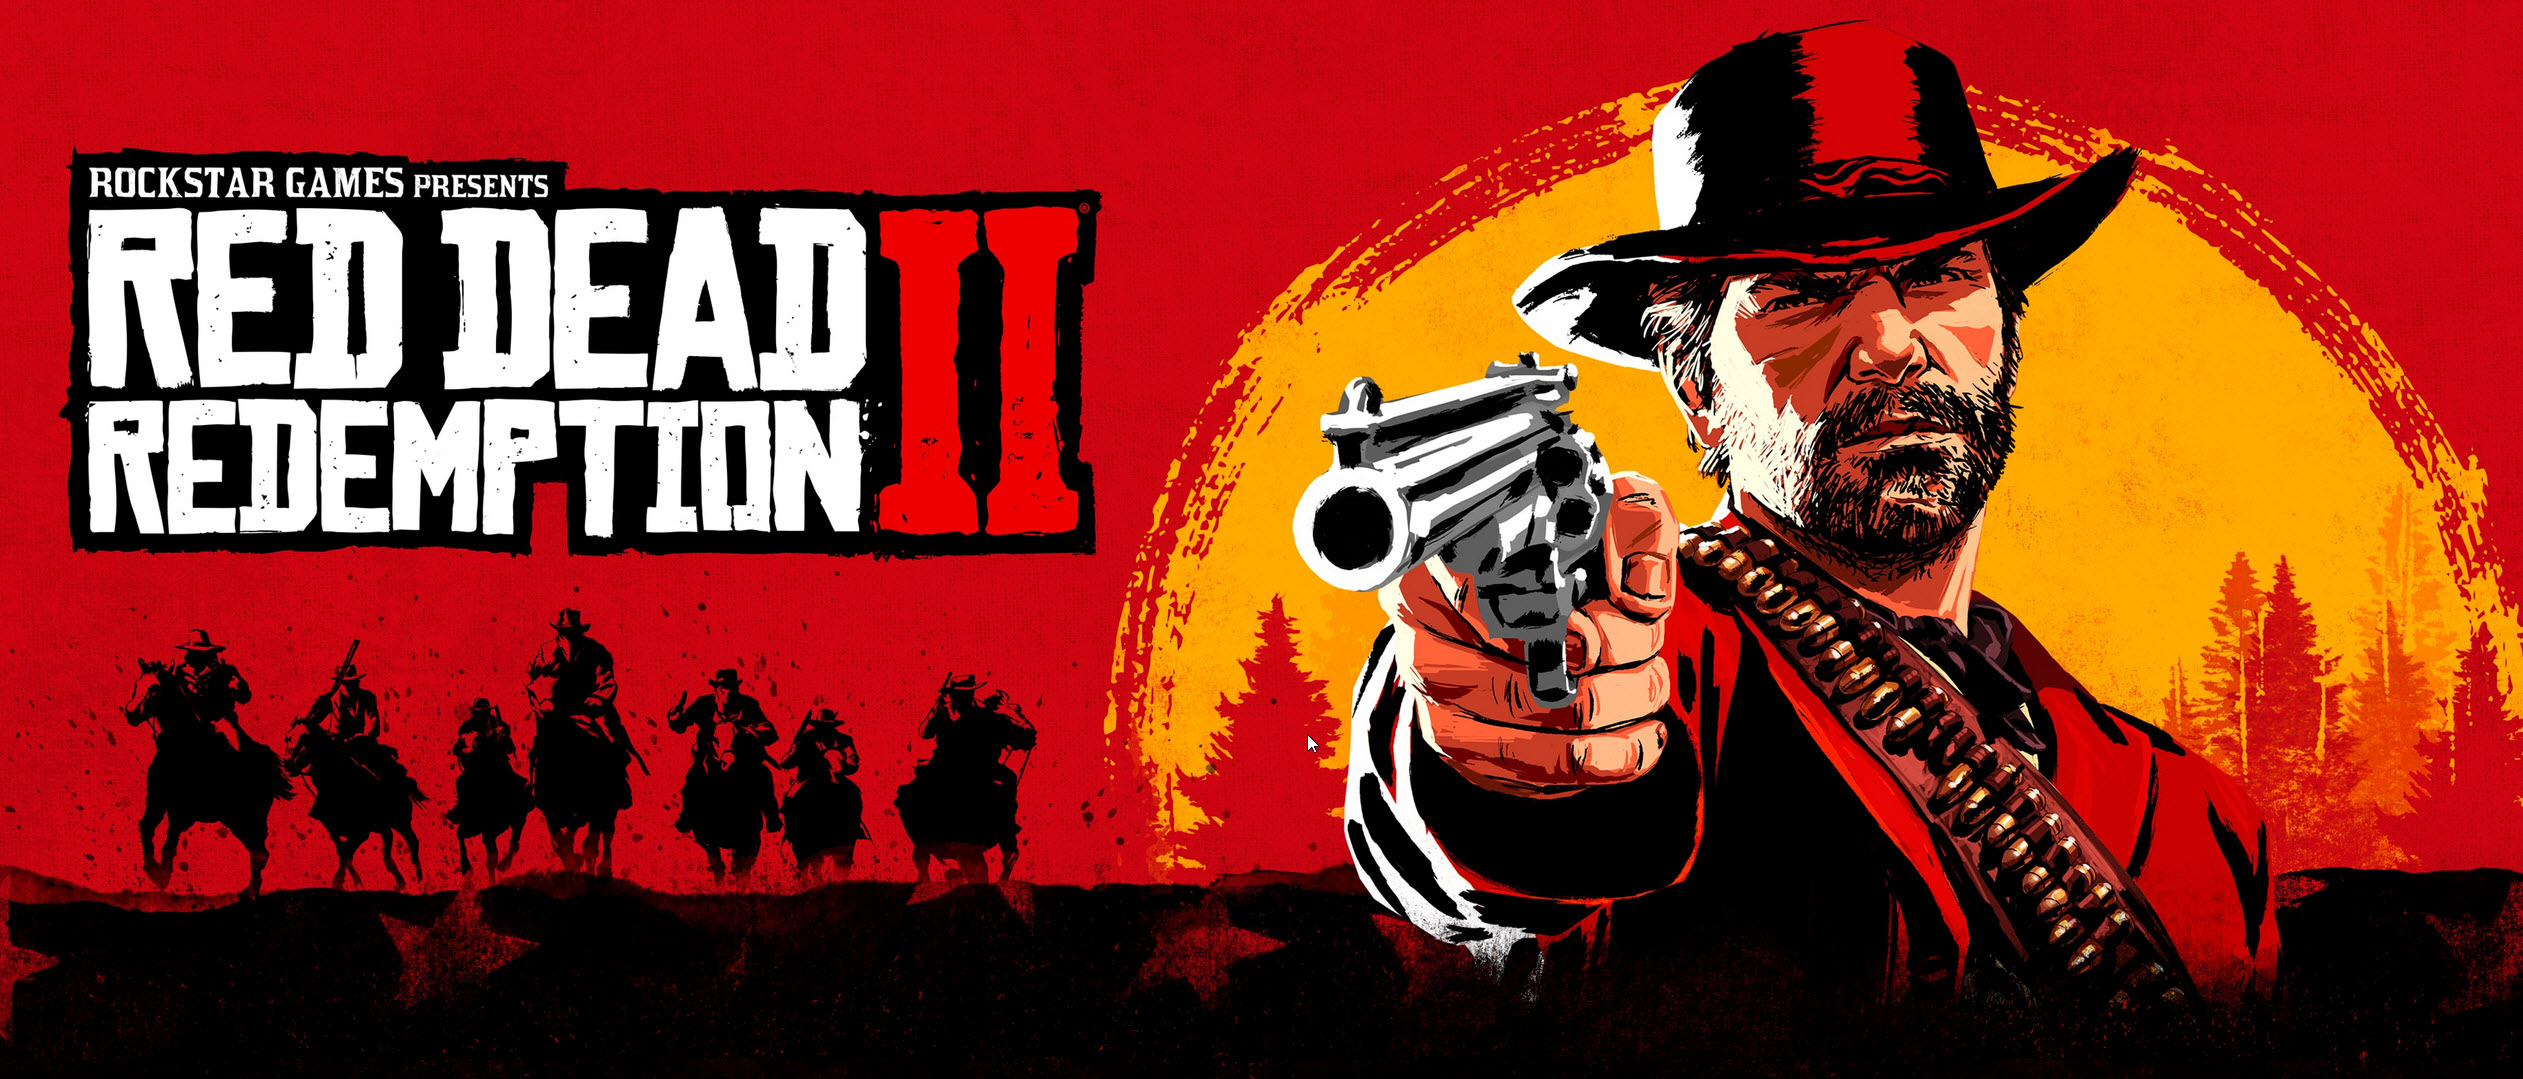 2019 10 11 10 06 52 ลง PC จนได้ Red Dead Redemption 2 เวอร์ชั่น PC กับสเปกที่ใช้ในการเล่นเตรียมพื้นที่ HDD 150 GB เอาไว้ด้วยนะครับ